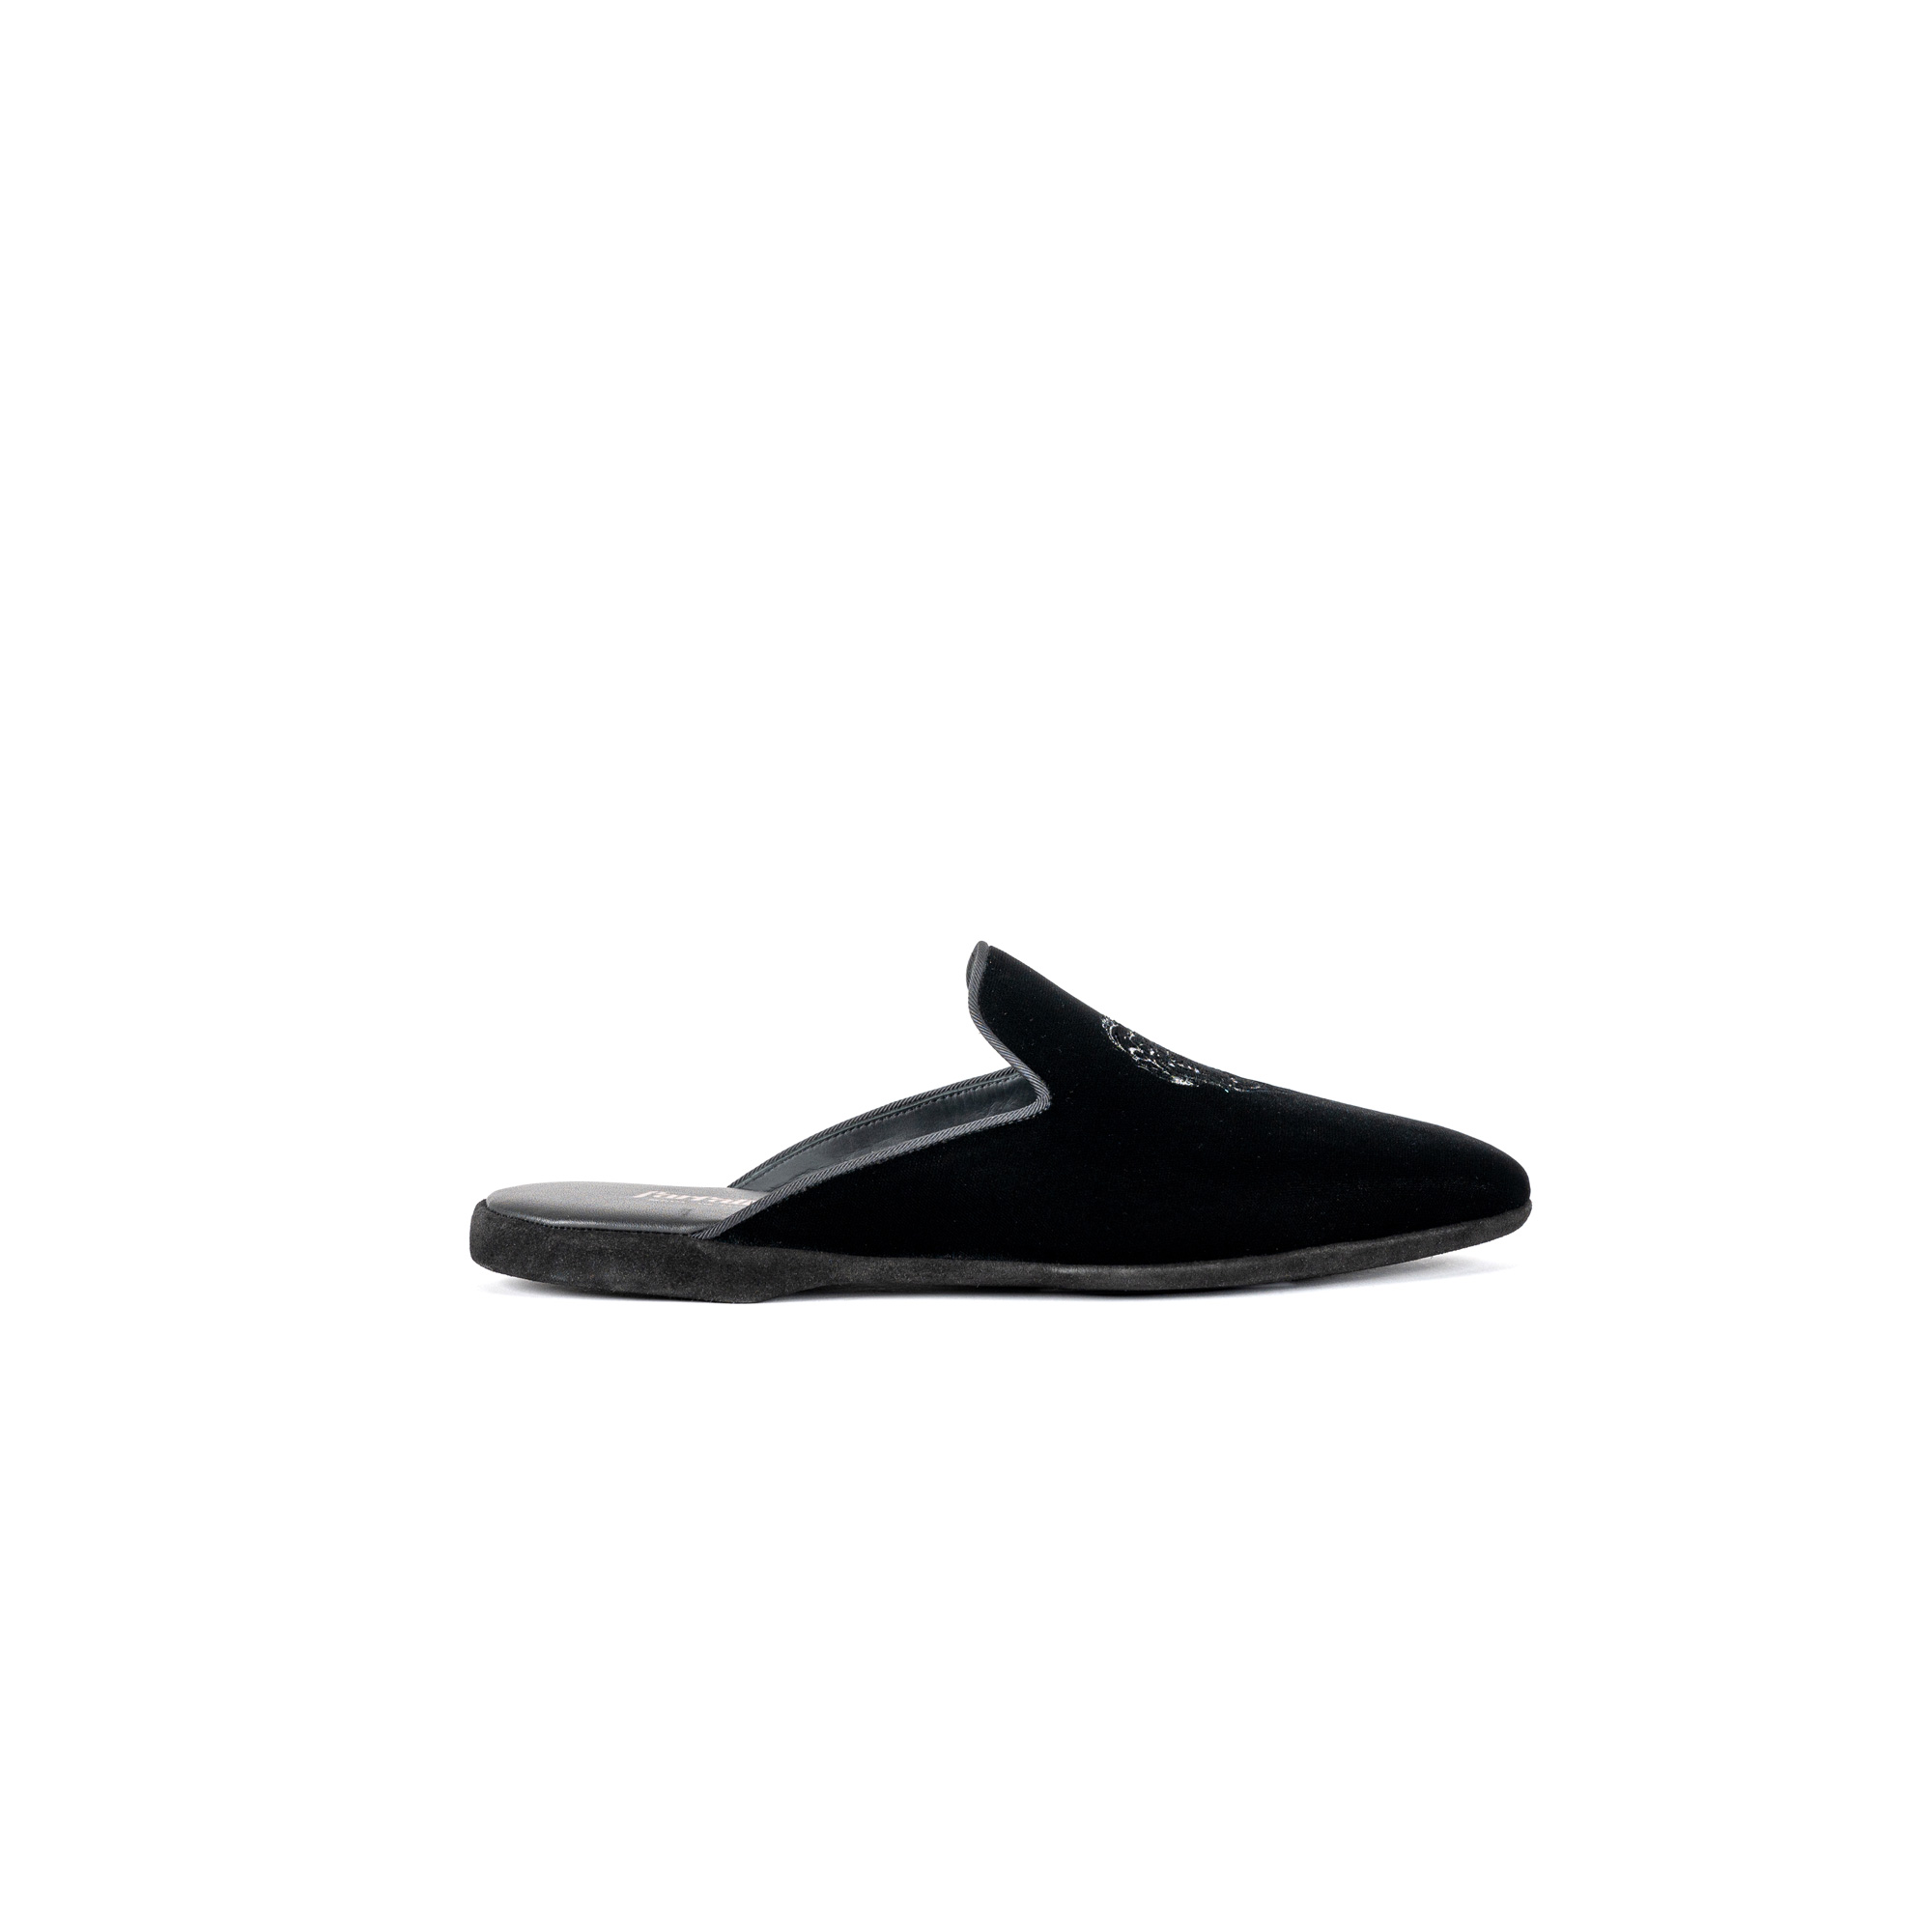 Pantofola interno sera in velluto nero - Farfalla italian slippers